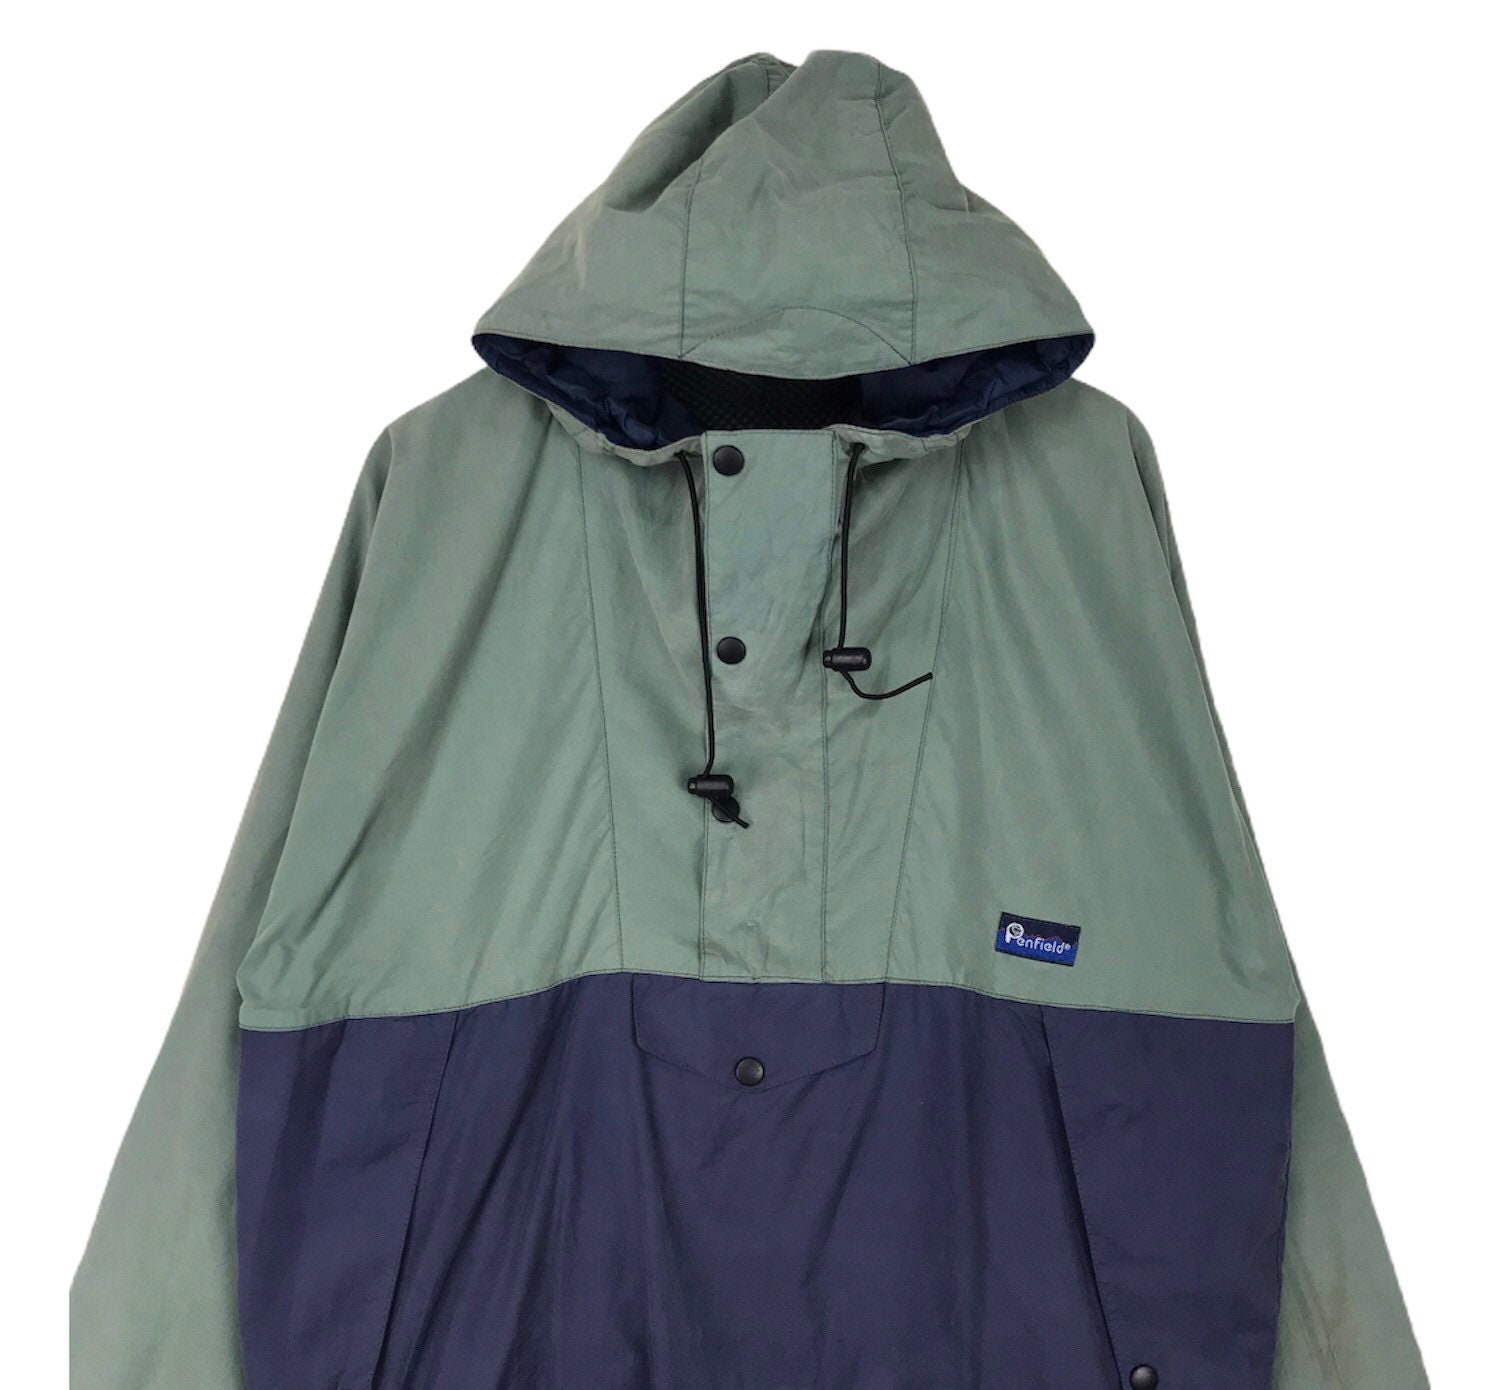 Vintage Penfield Anorak nylon jacket hoodie | Etsy